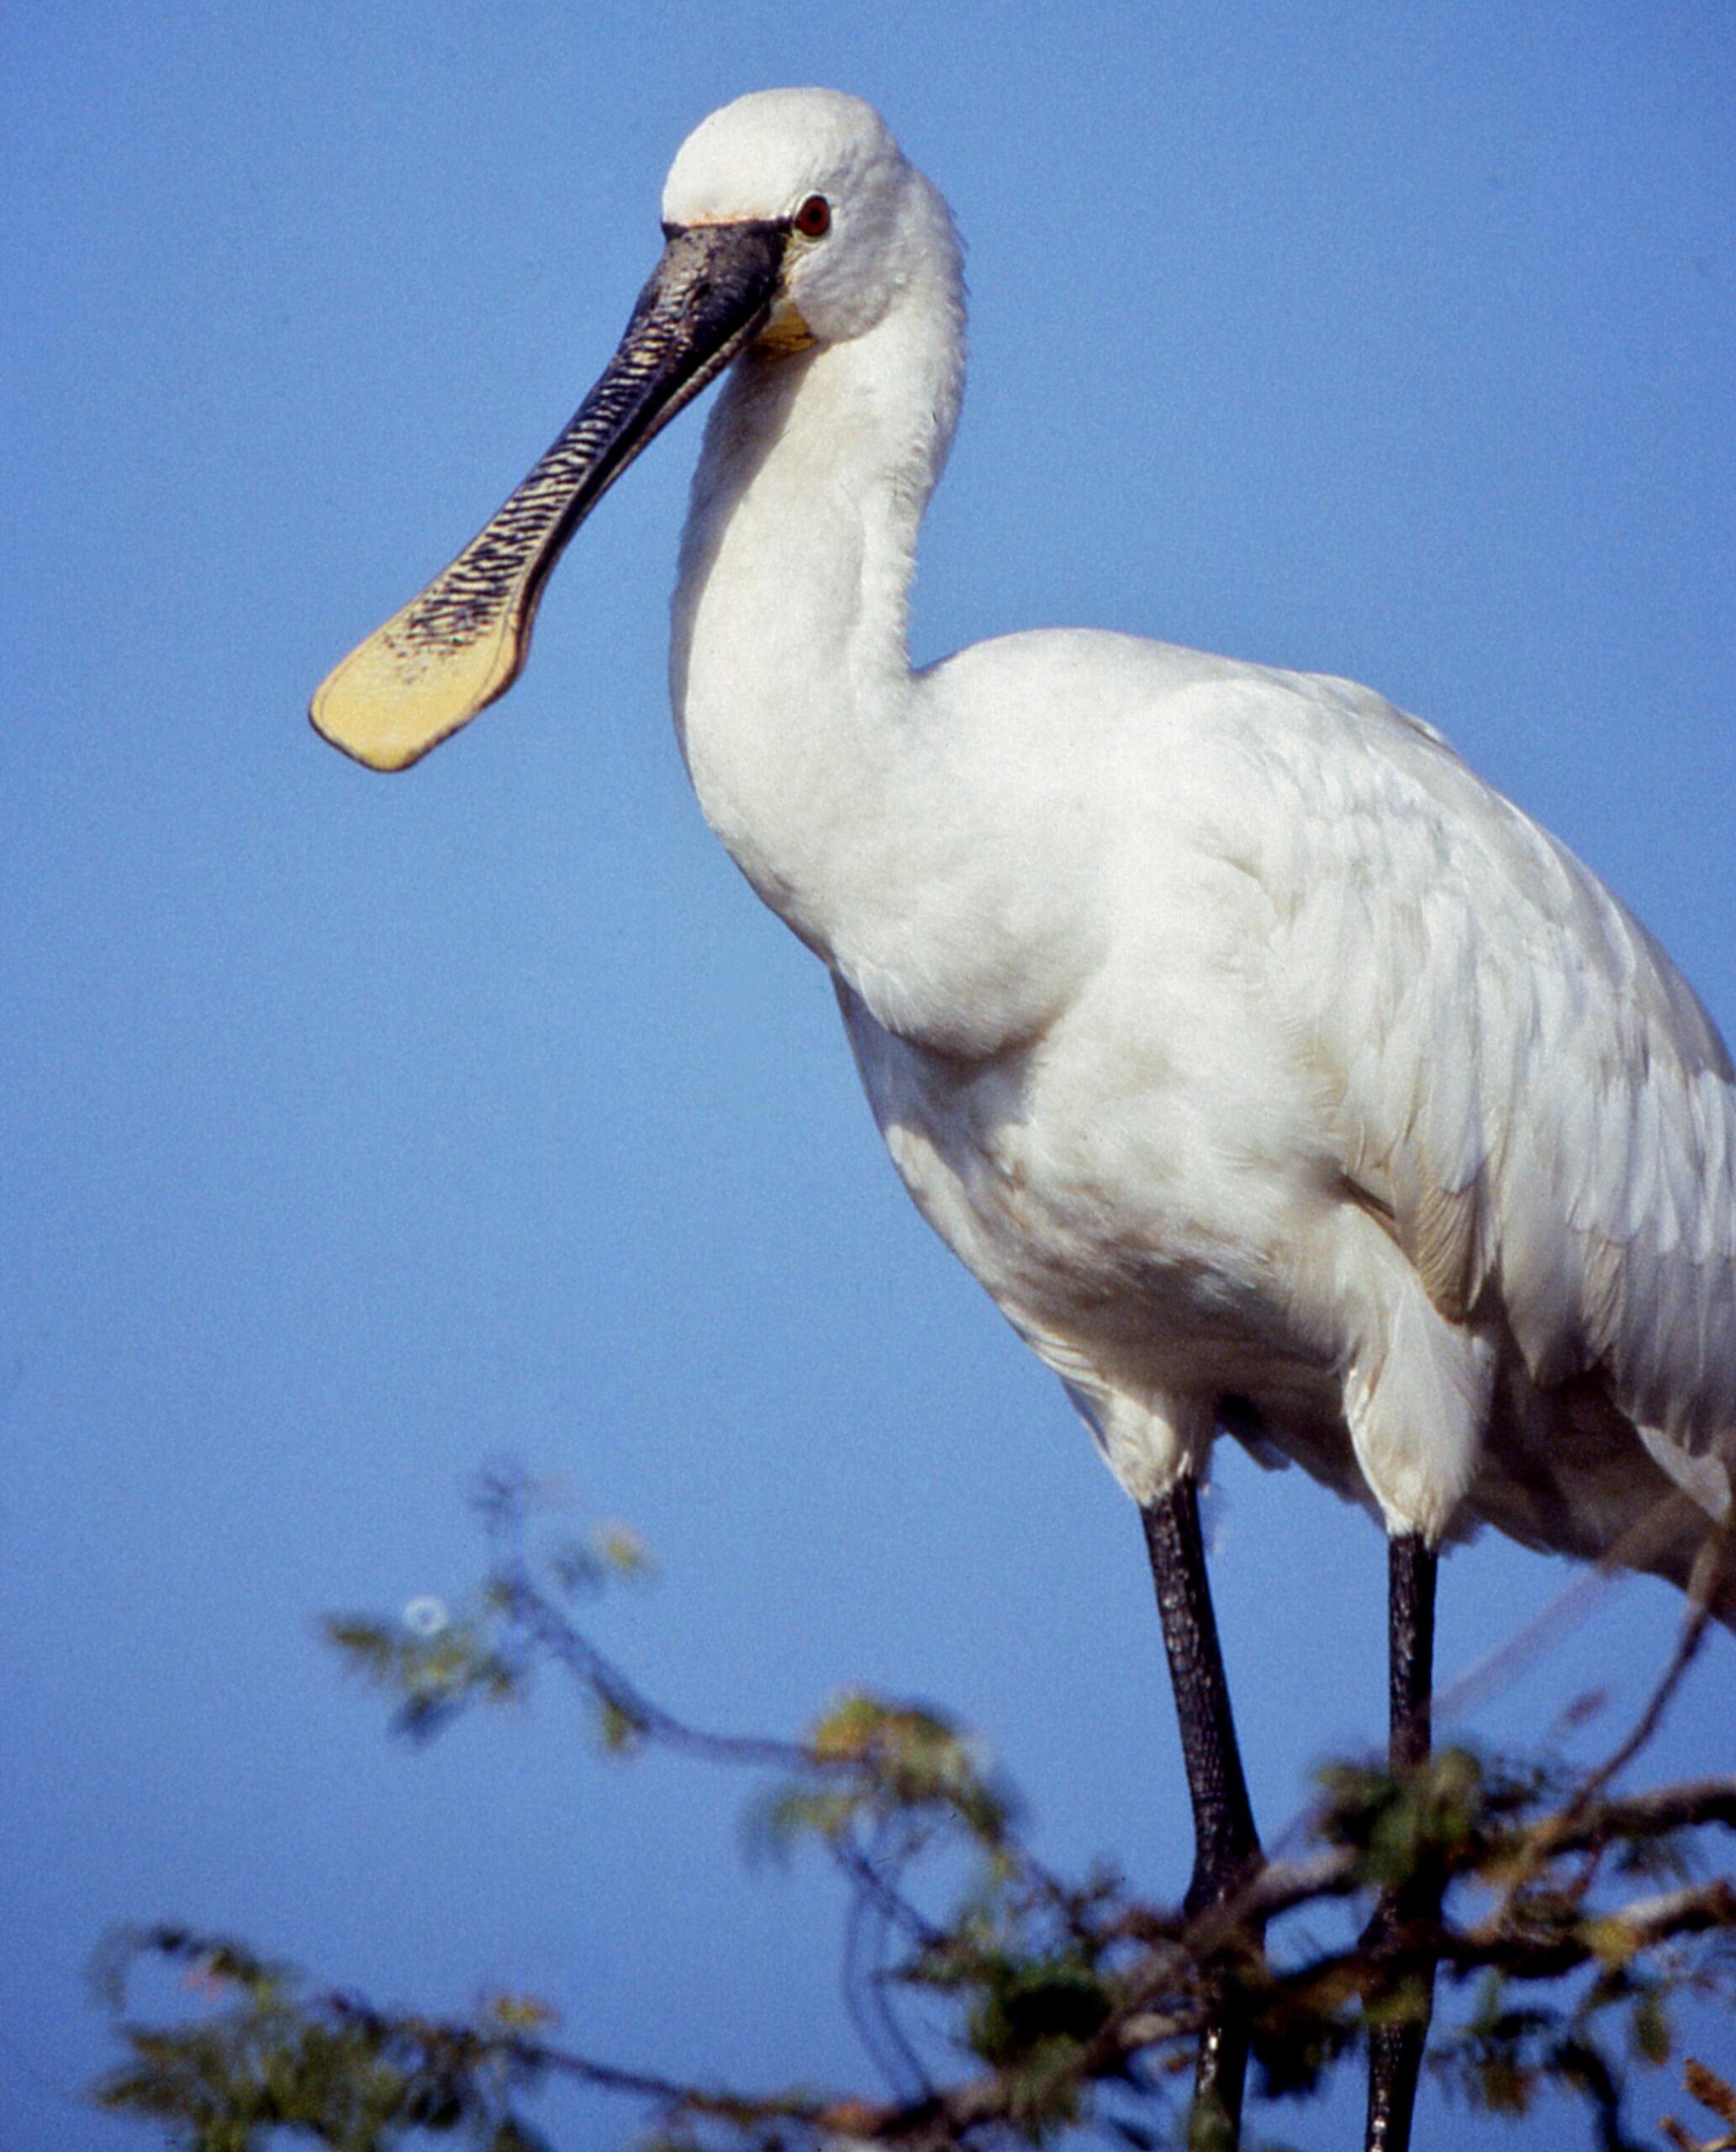 Biały duży ptak z długim dziobem rozpłaszczonym na końcu